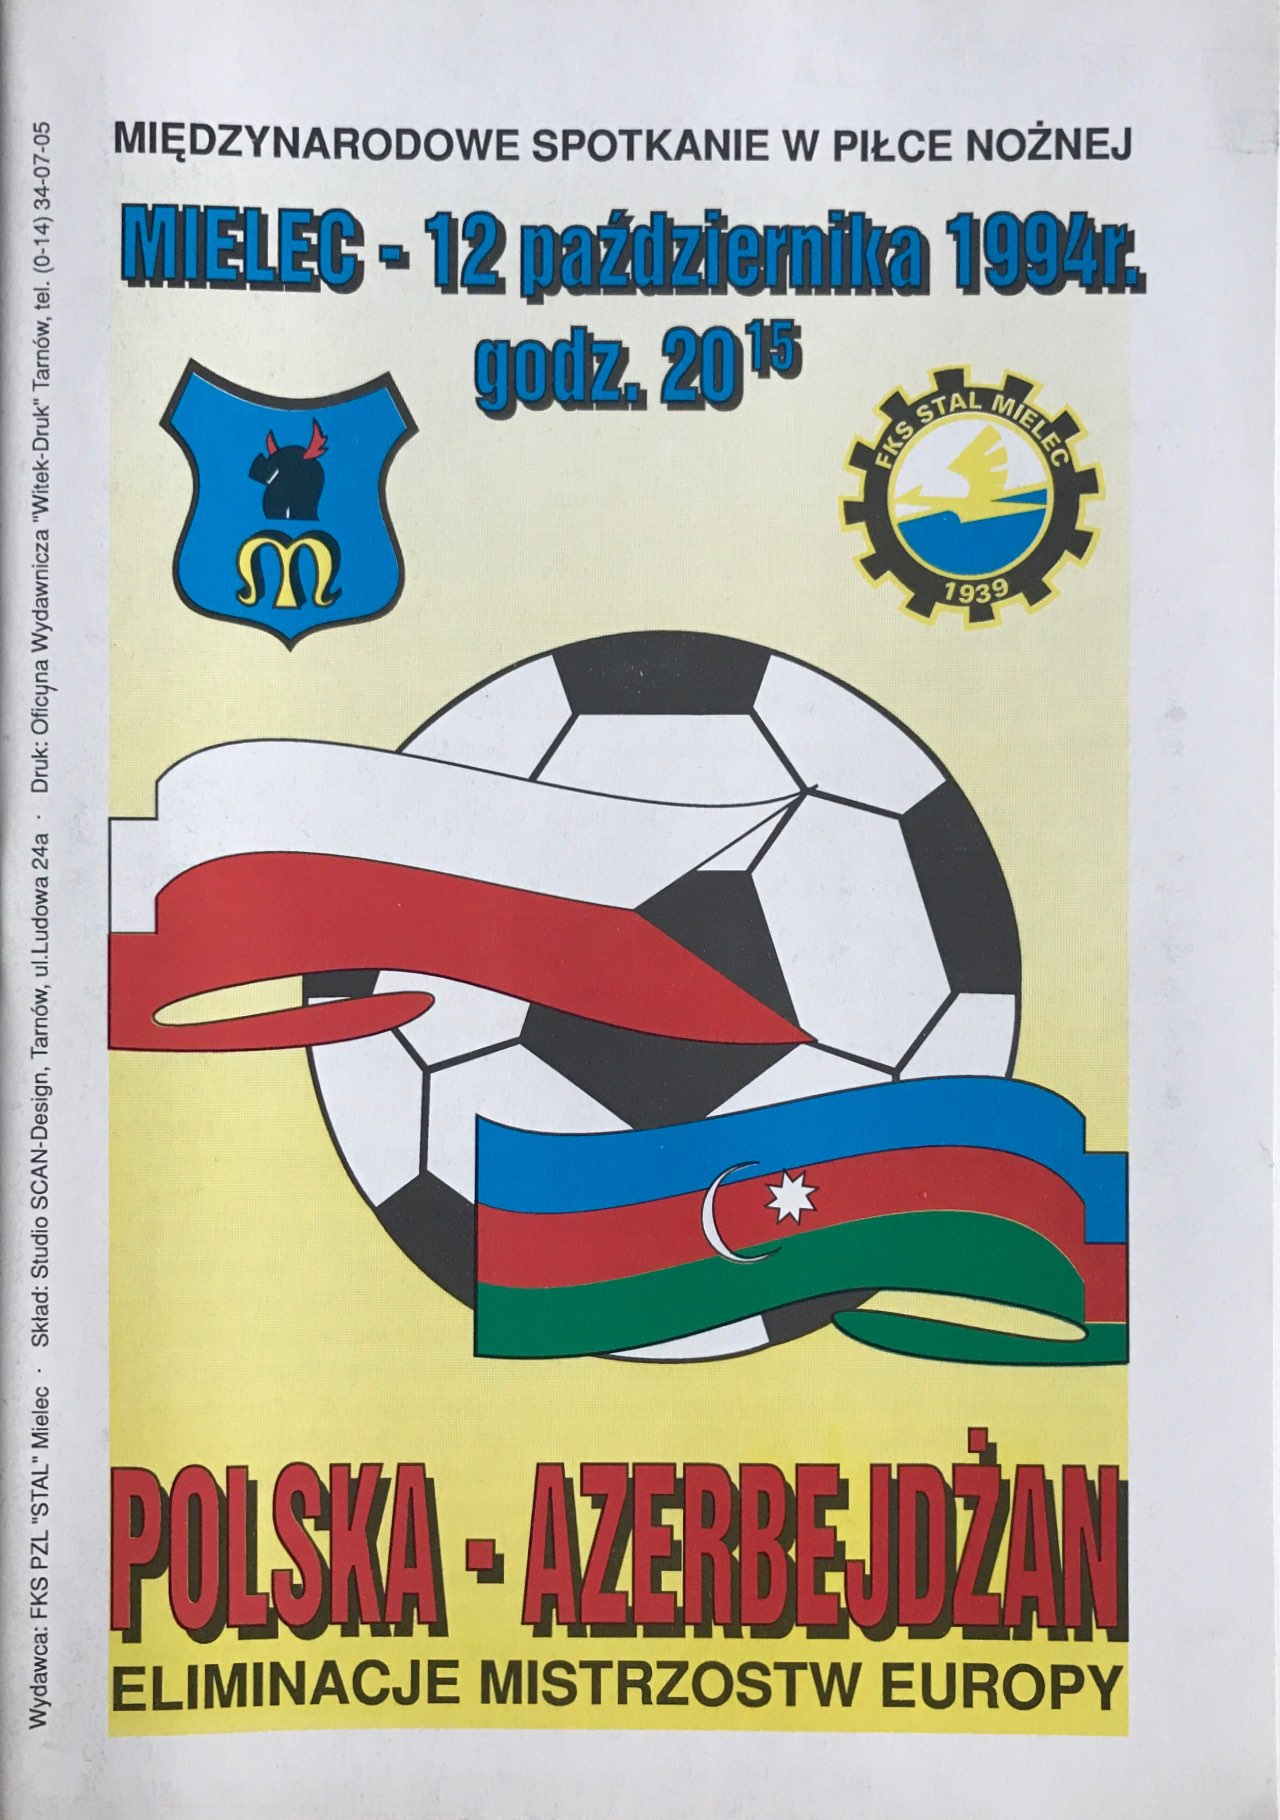 Program meczowy Polska - Azerbejdżan 1:0 (12.10.1994)